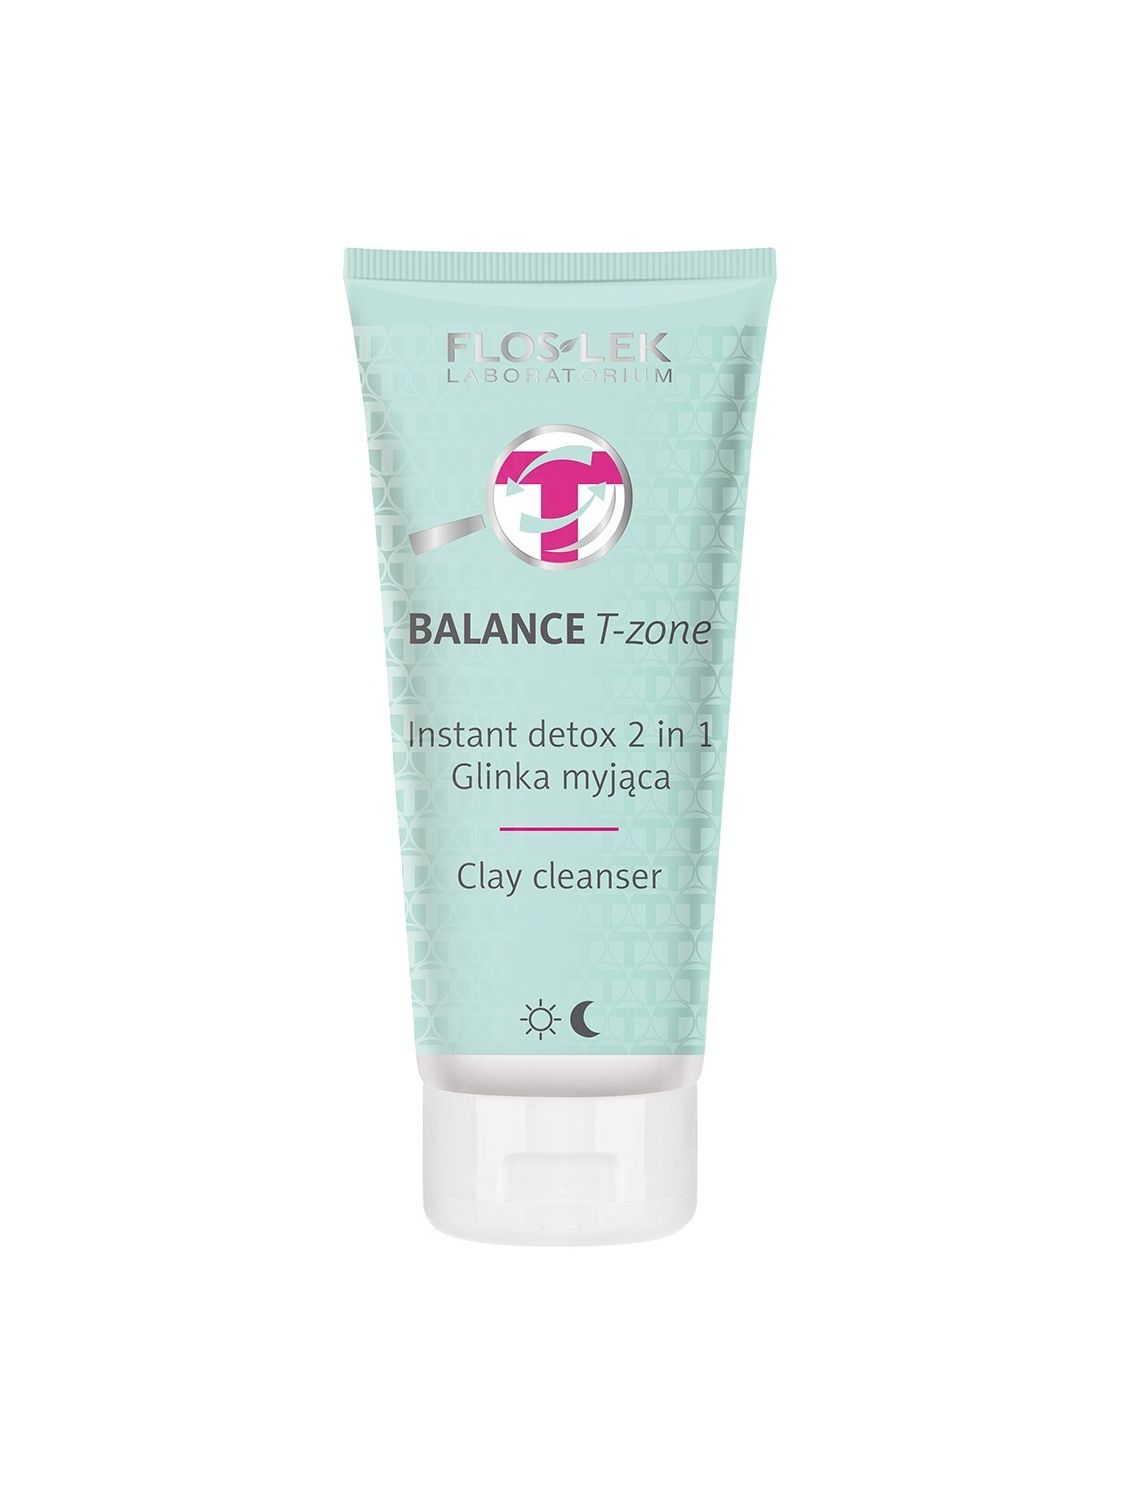 BALANCE Т-зона косметична глина для вмивання обличчя каоліновий миттєвий детокс 2в1 для дня і ночі FLOSLEK 125мл